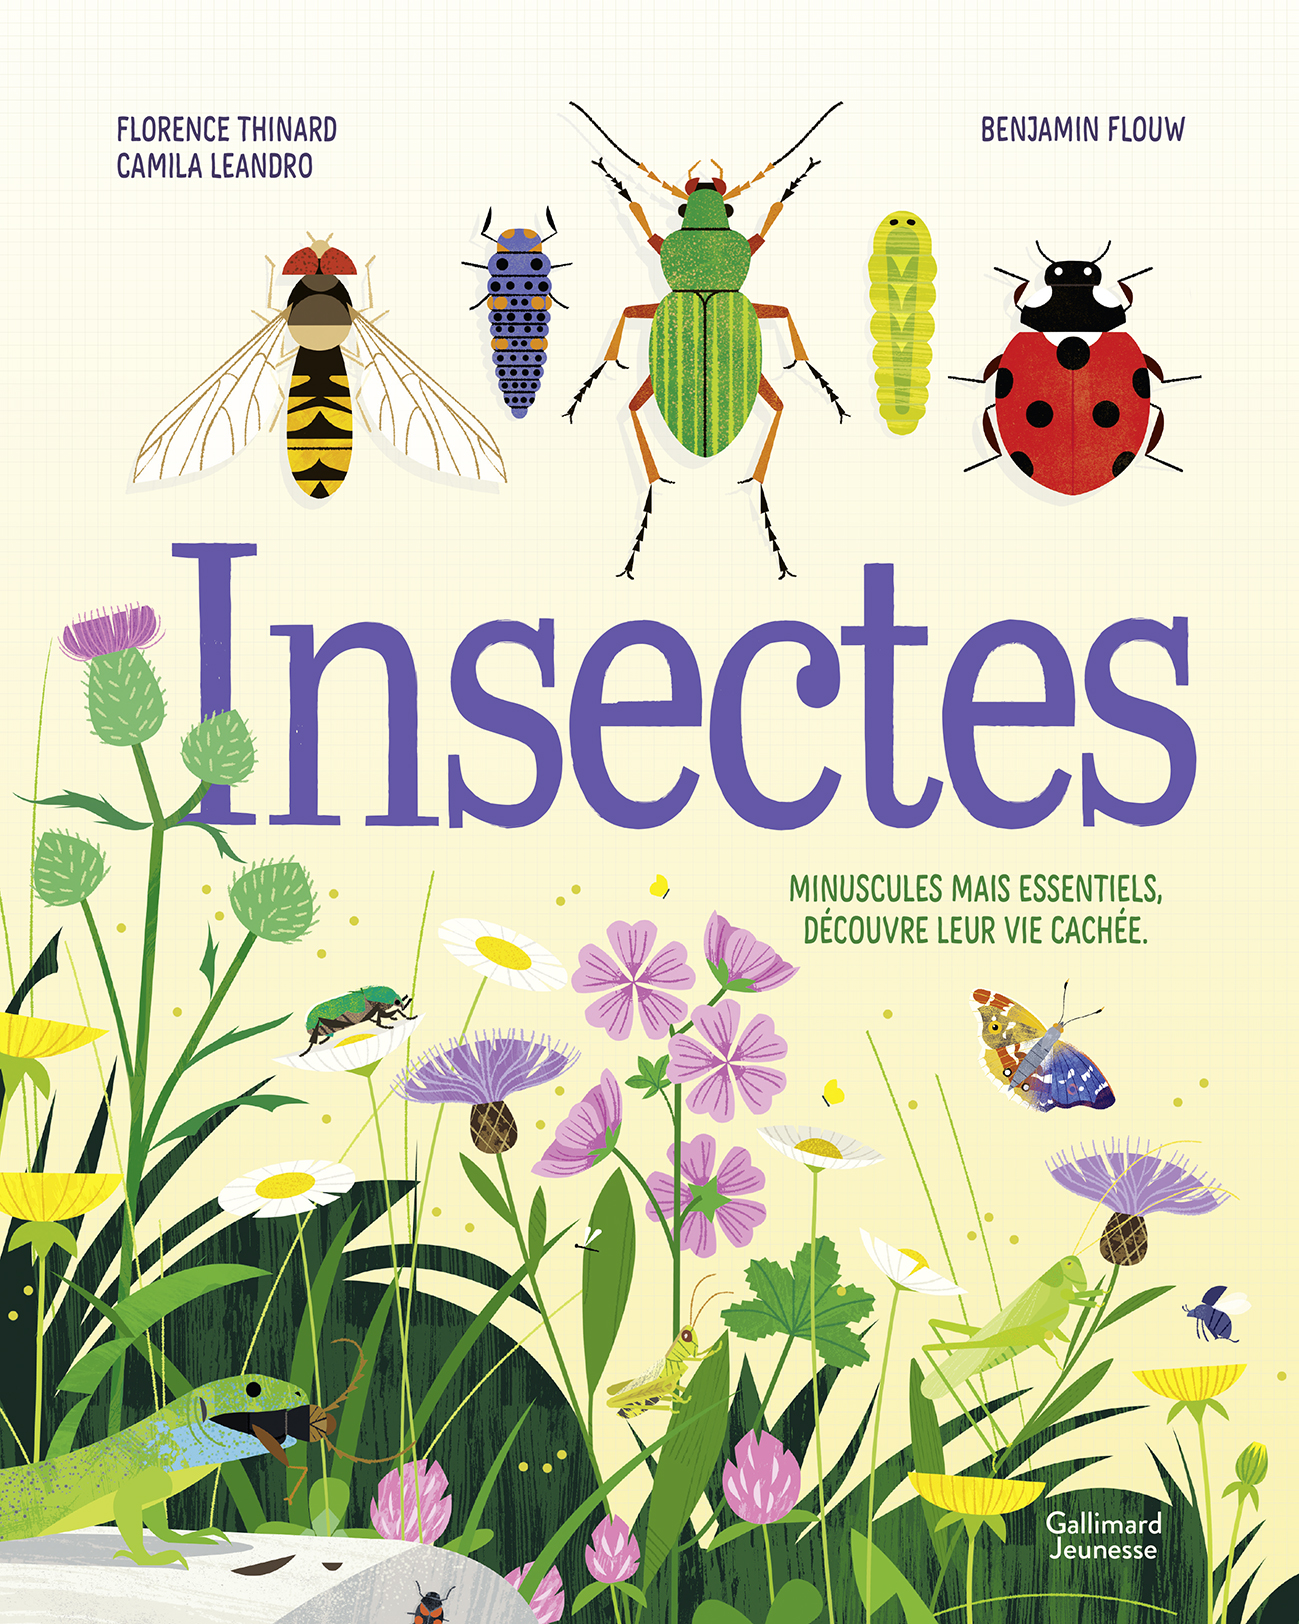 Insectes - Leur vie cachée, minuscule et essentielle